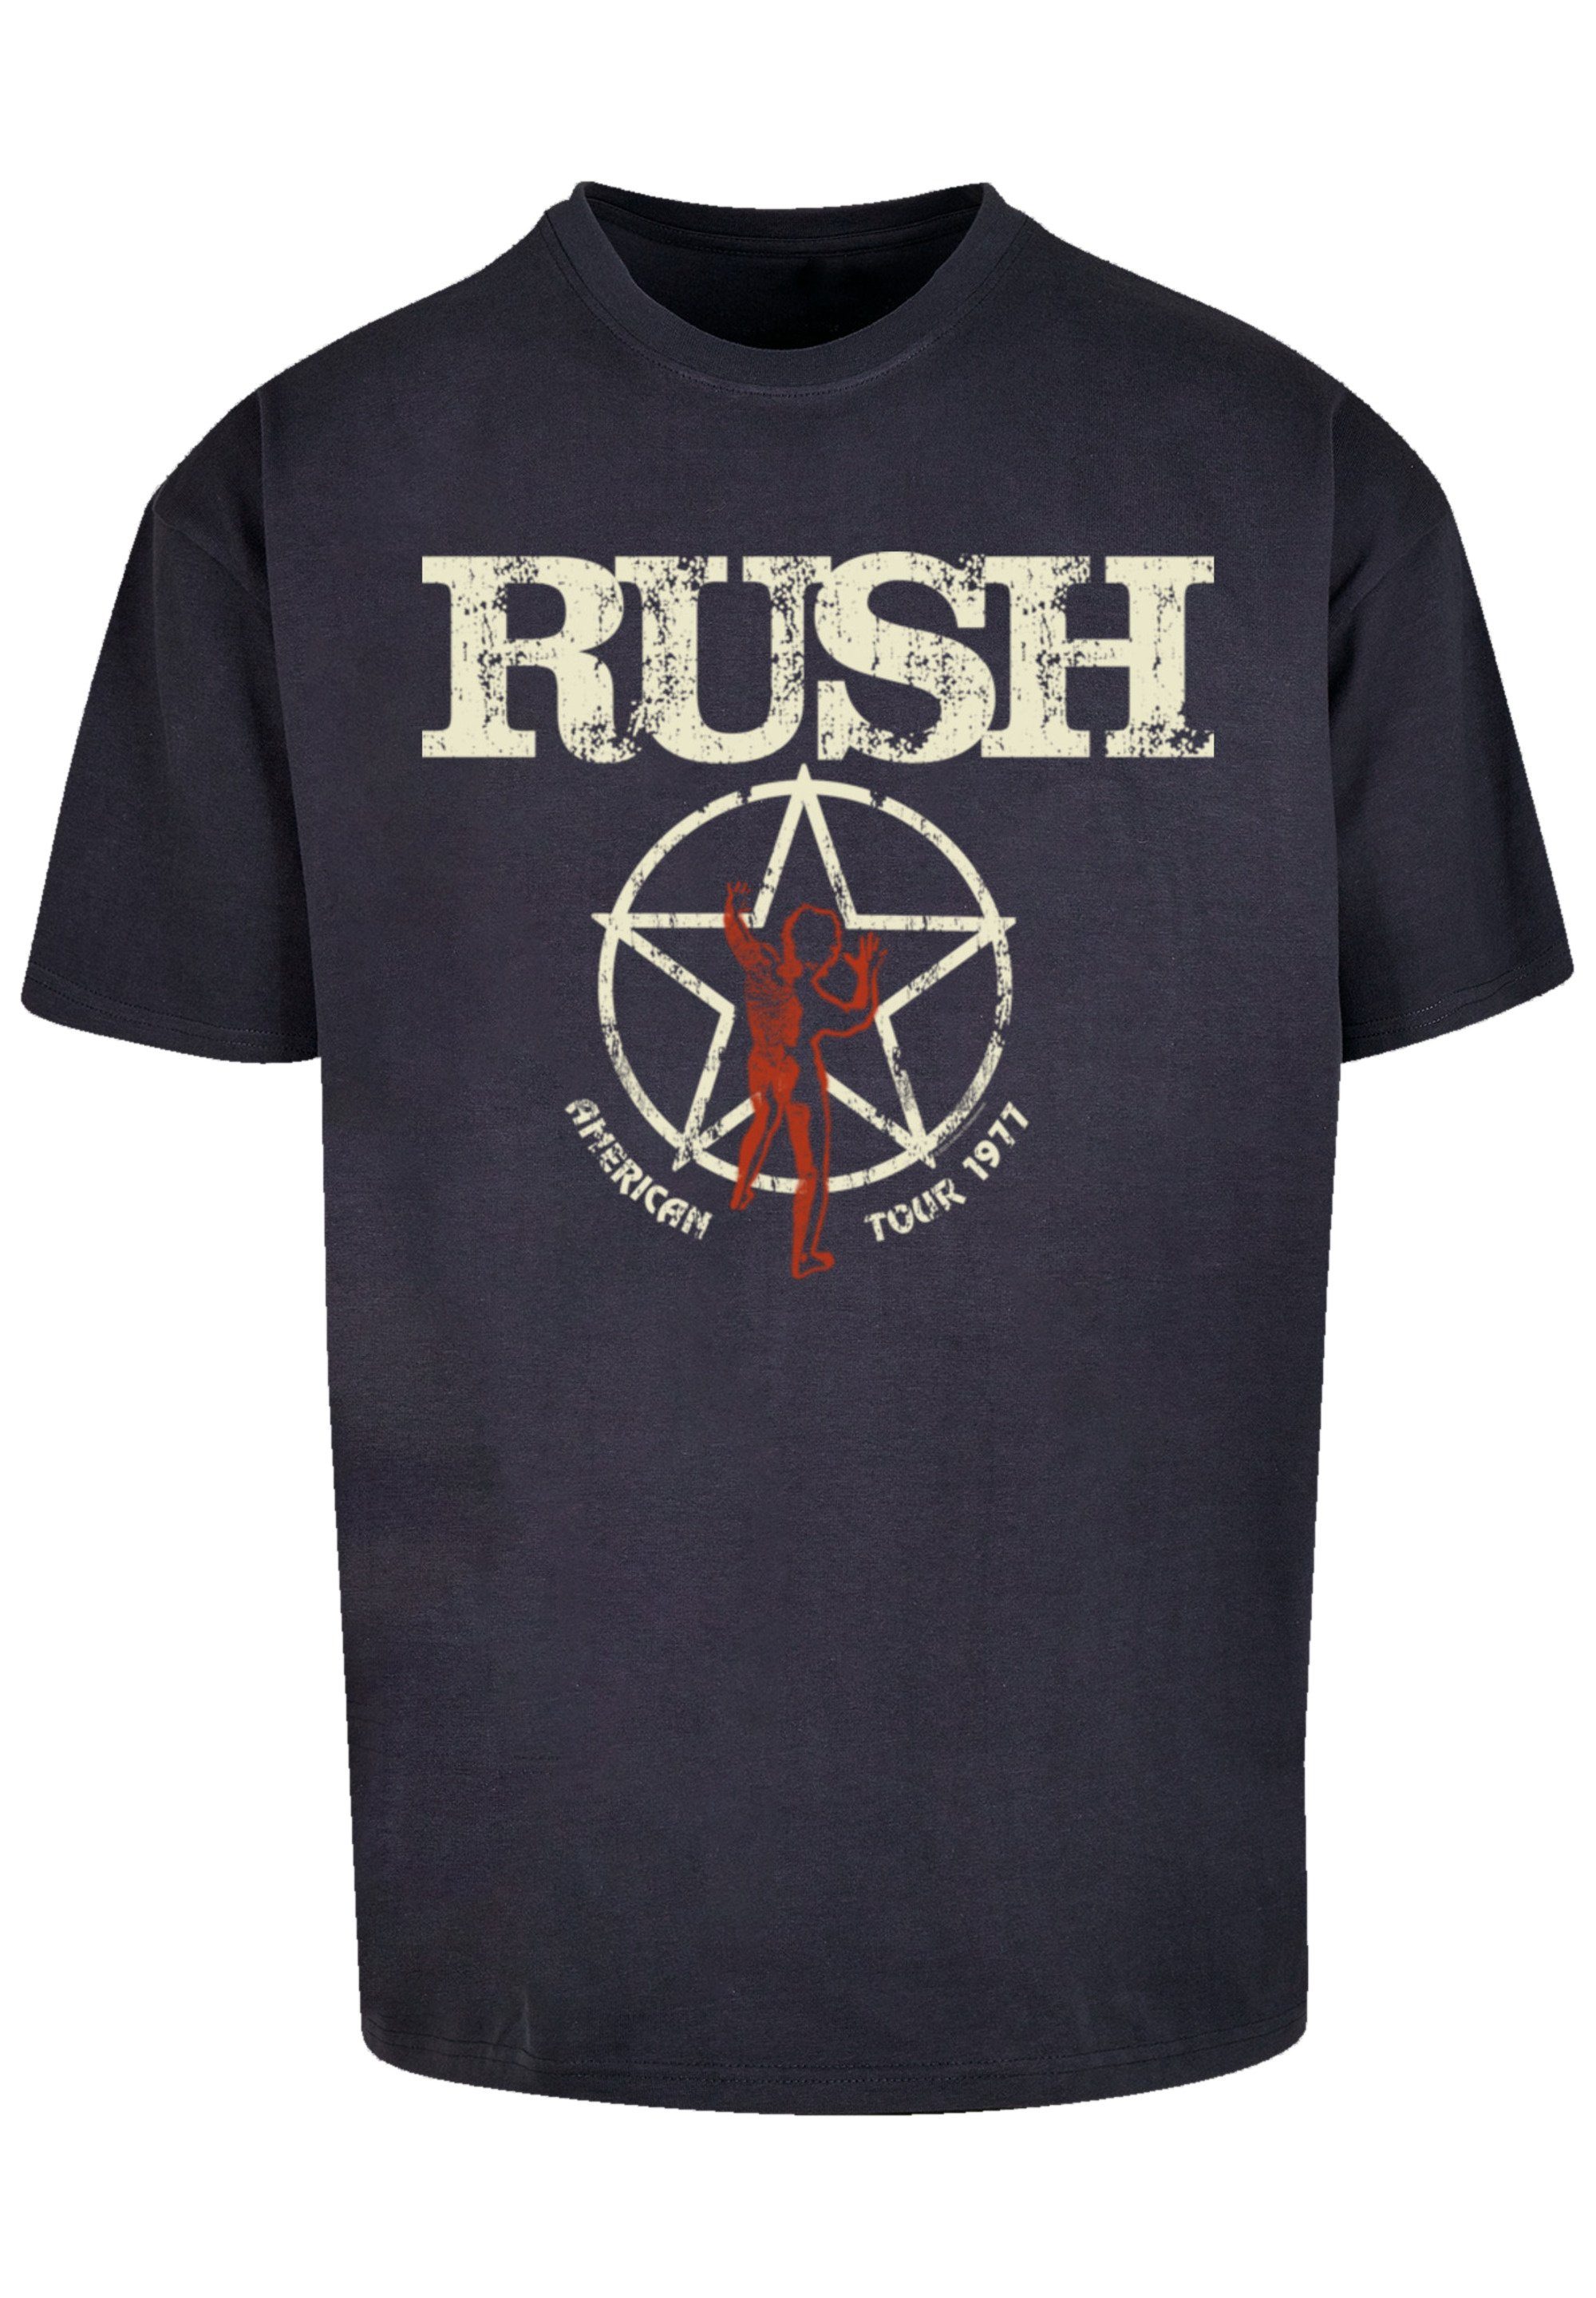 F4NT4STIC T-Shirt Qualität Premium 1977 Rush Rock Band Tour American navy